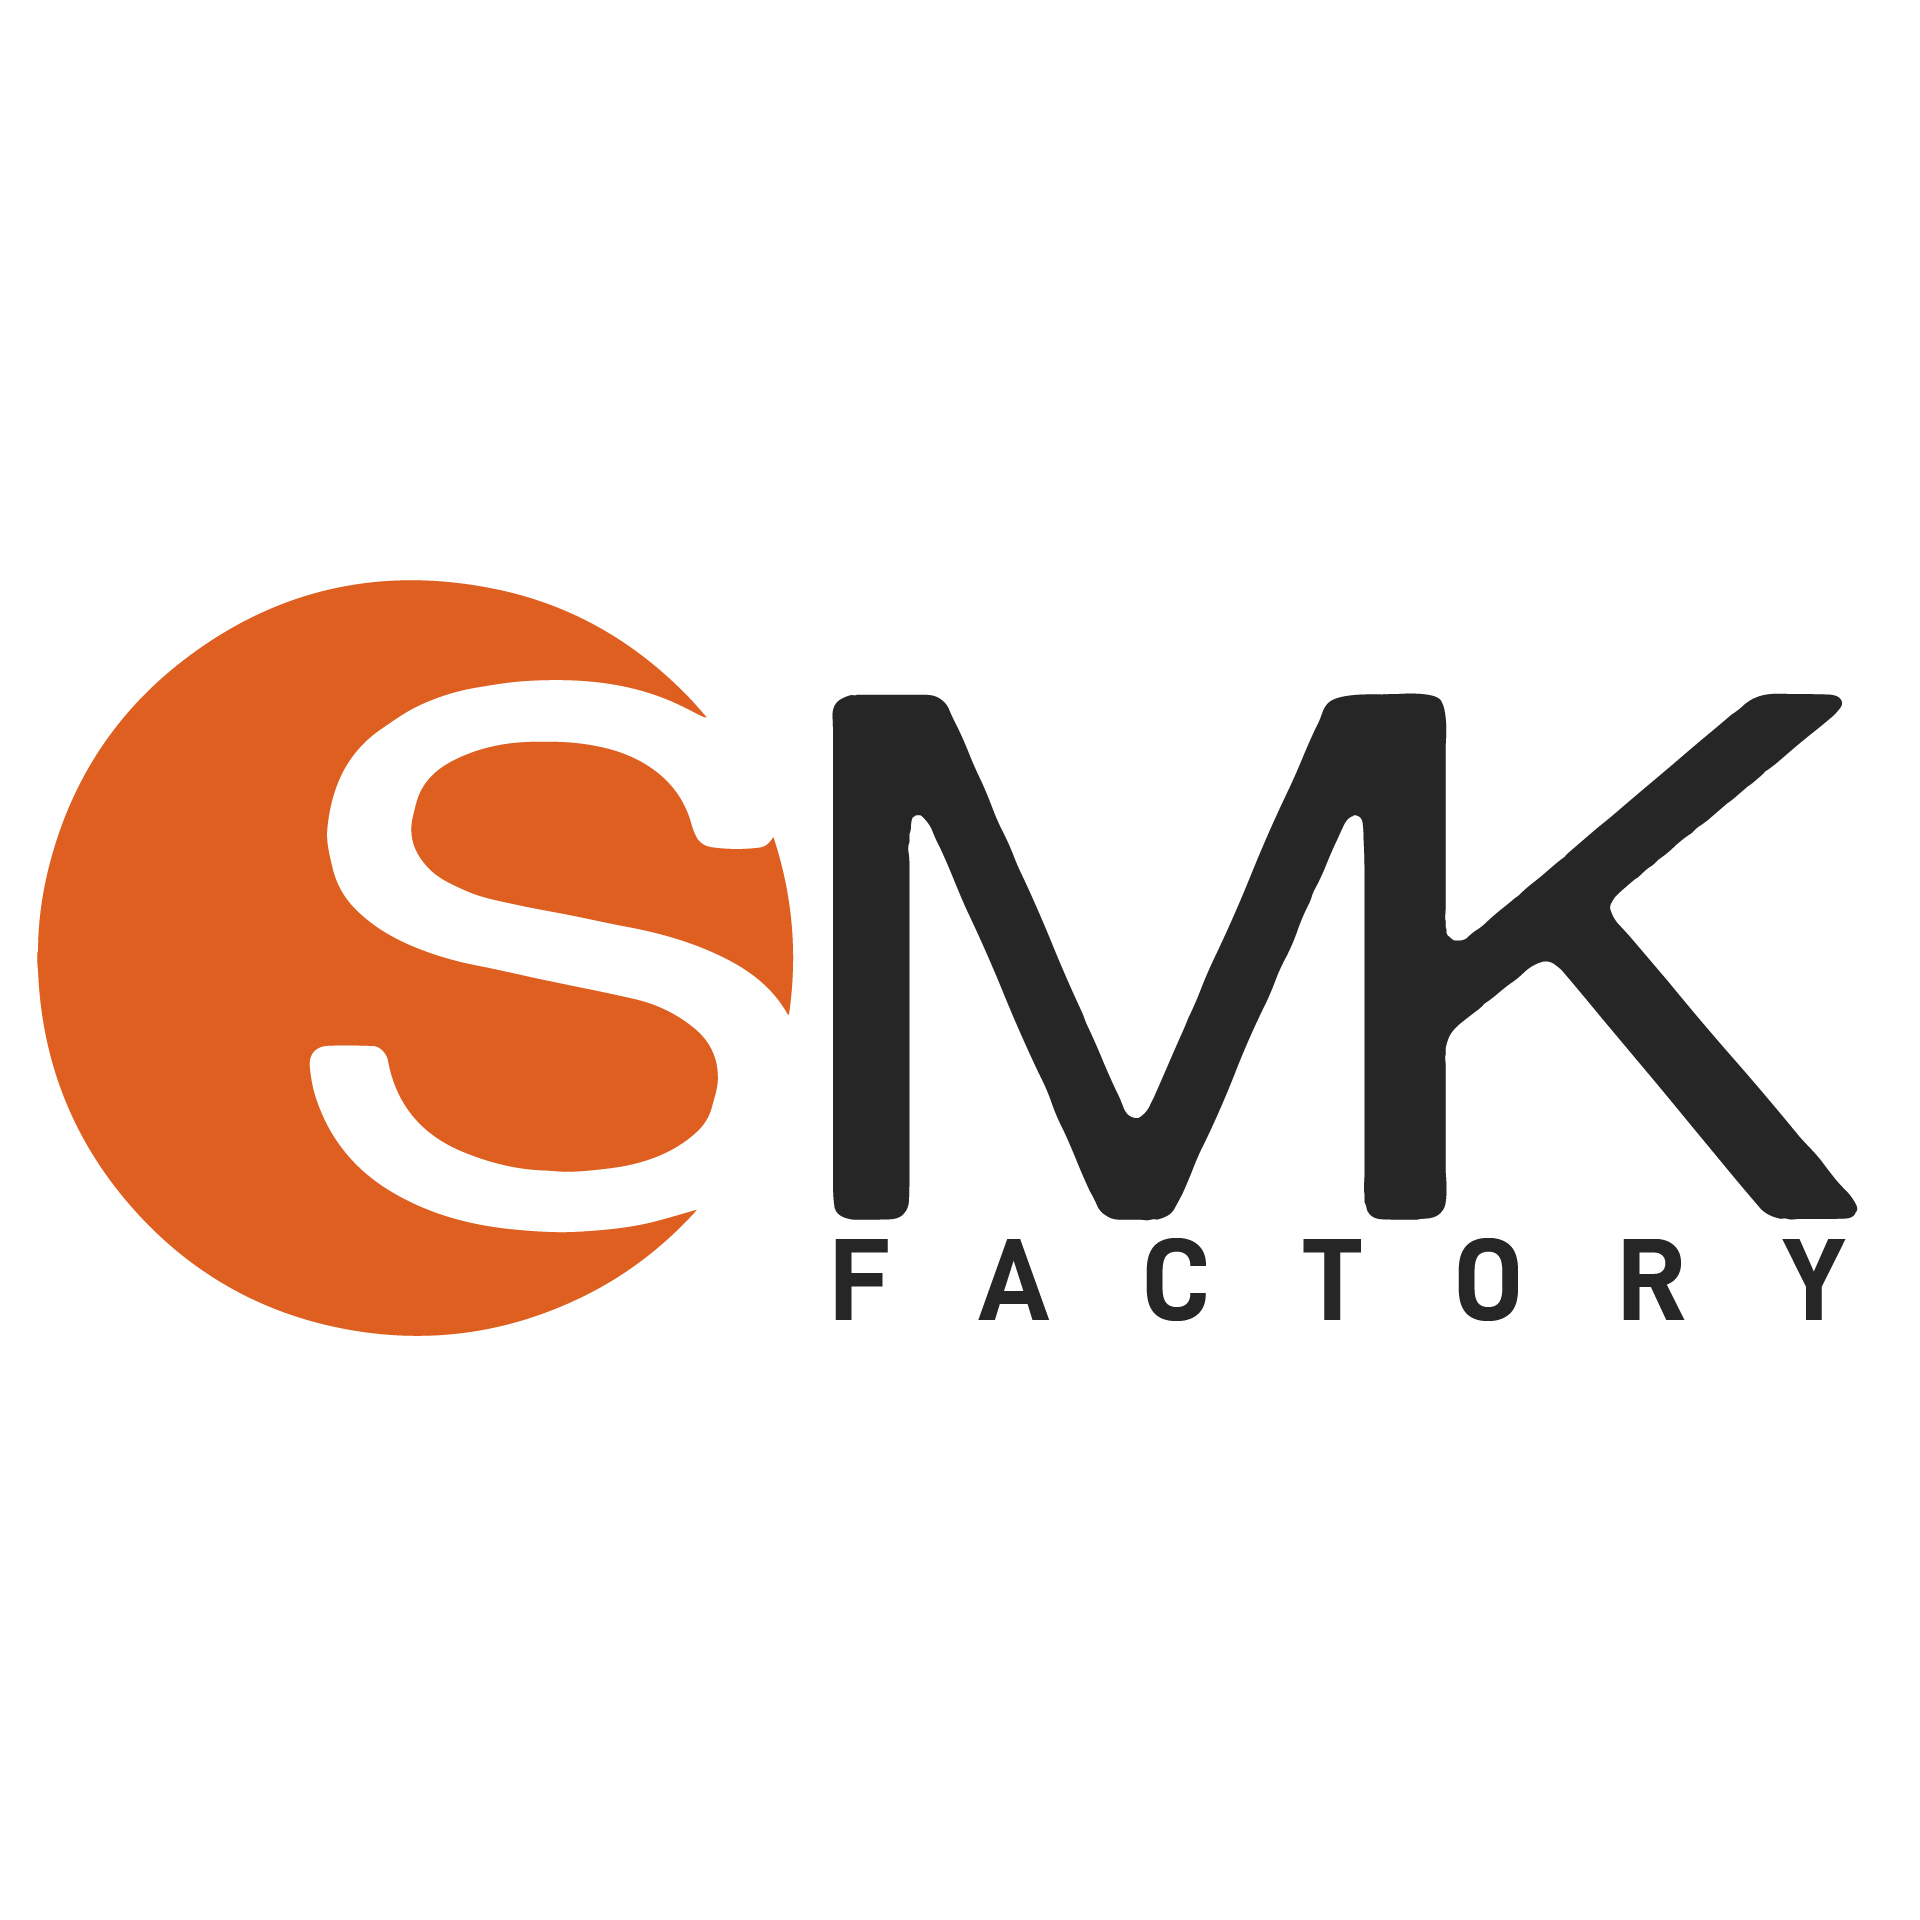 SMK Factory